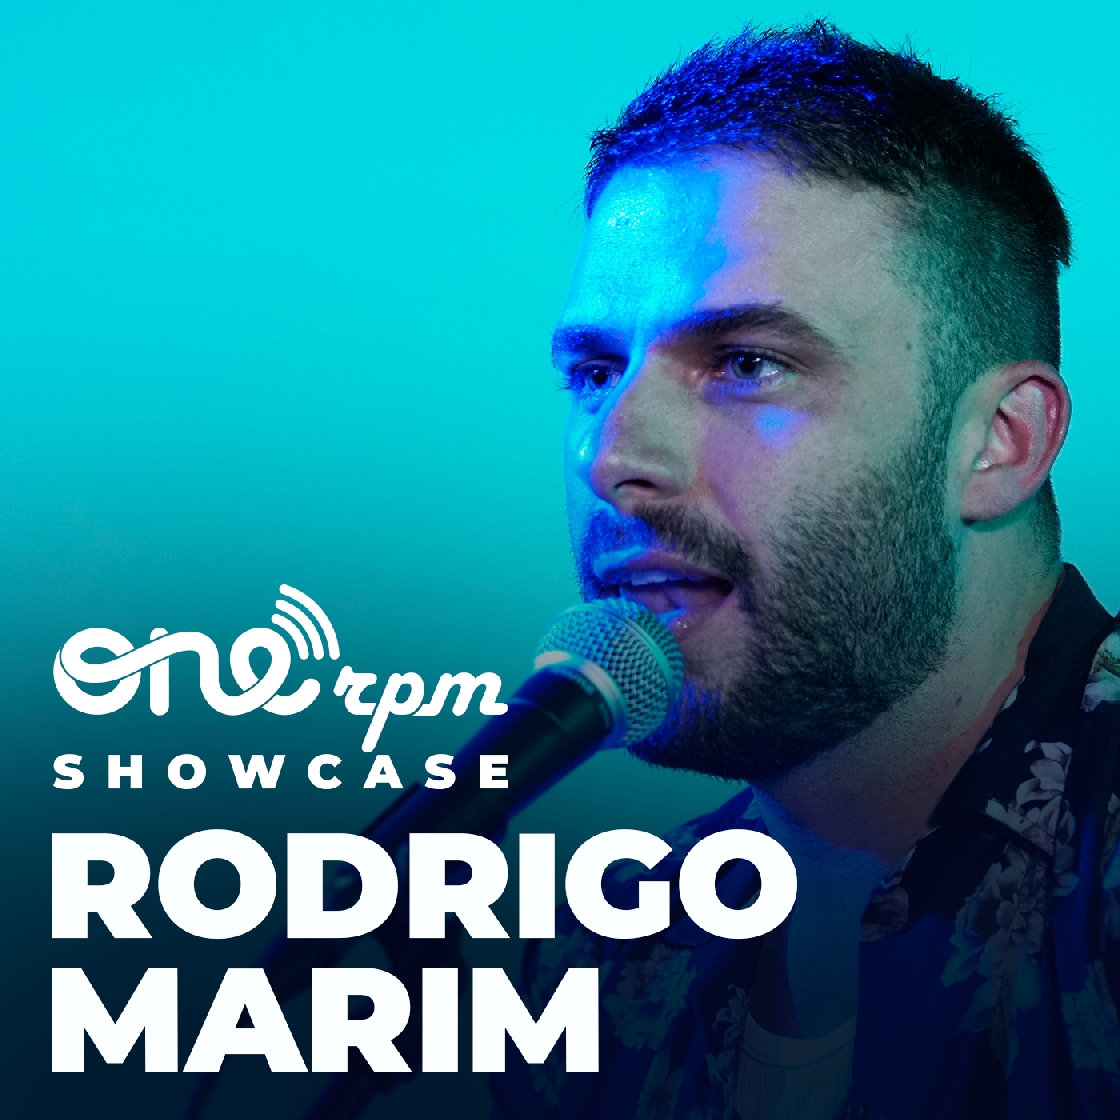 Rodrigo Marim chega ao ONErpm Showcase e apresenta duas versões inéditas 41